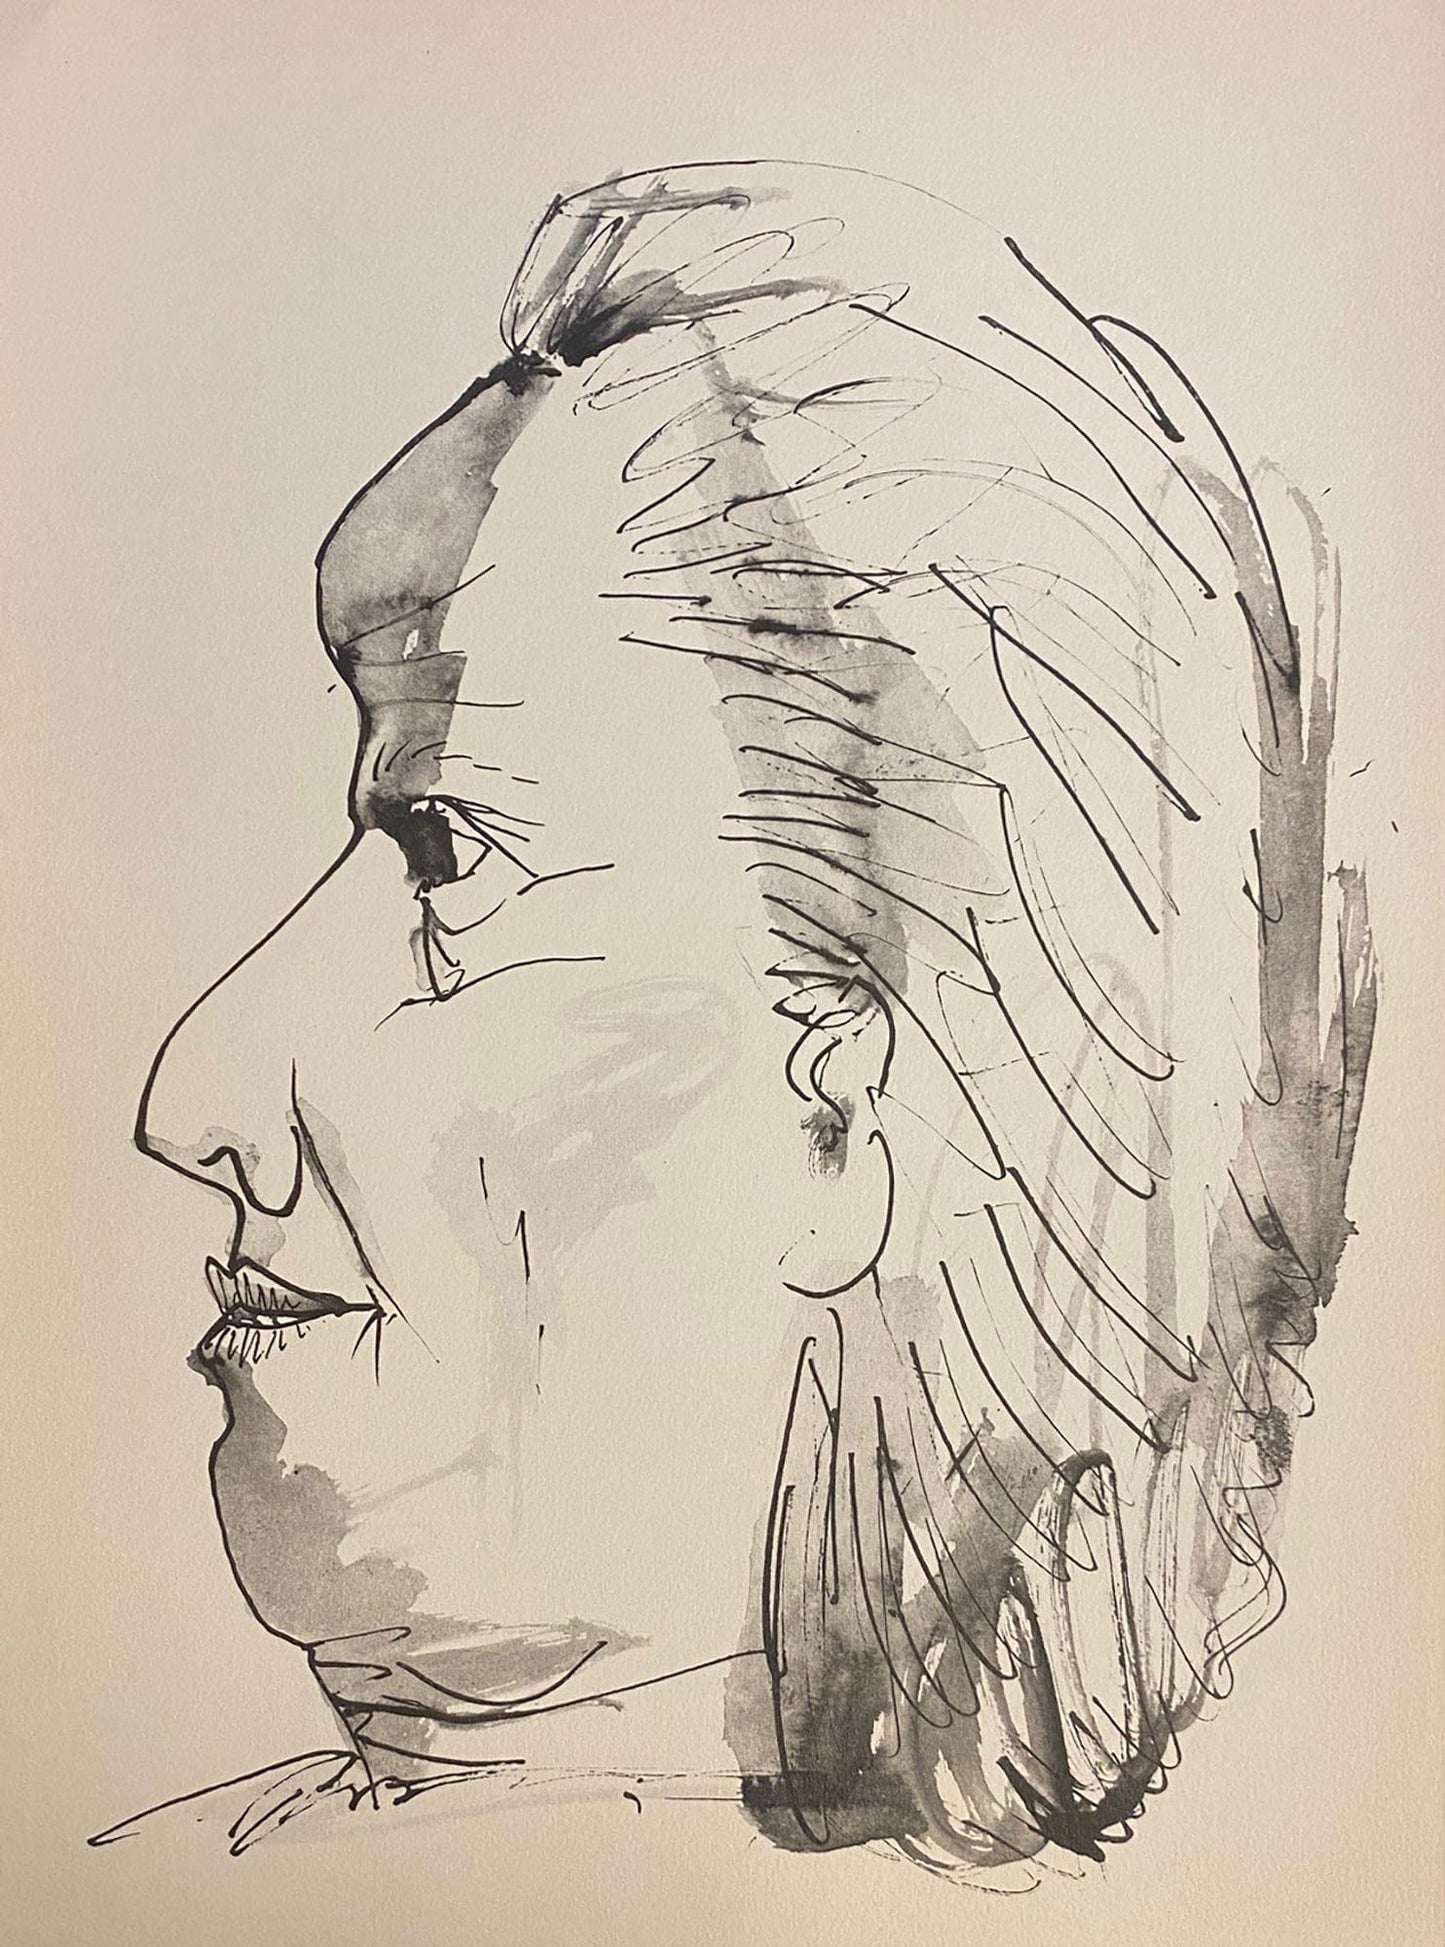 Pablo Picasso; Profil de vieille femme, trait et lavis zoom